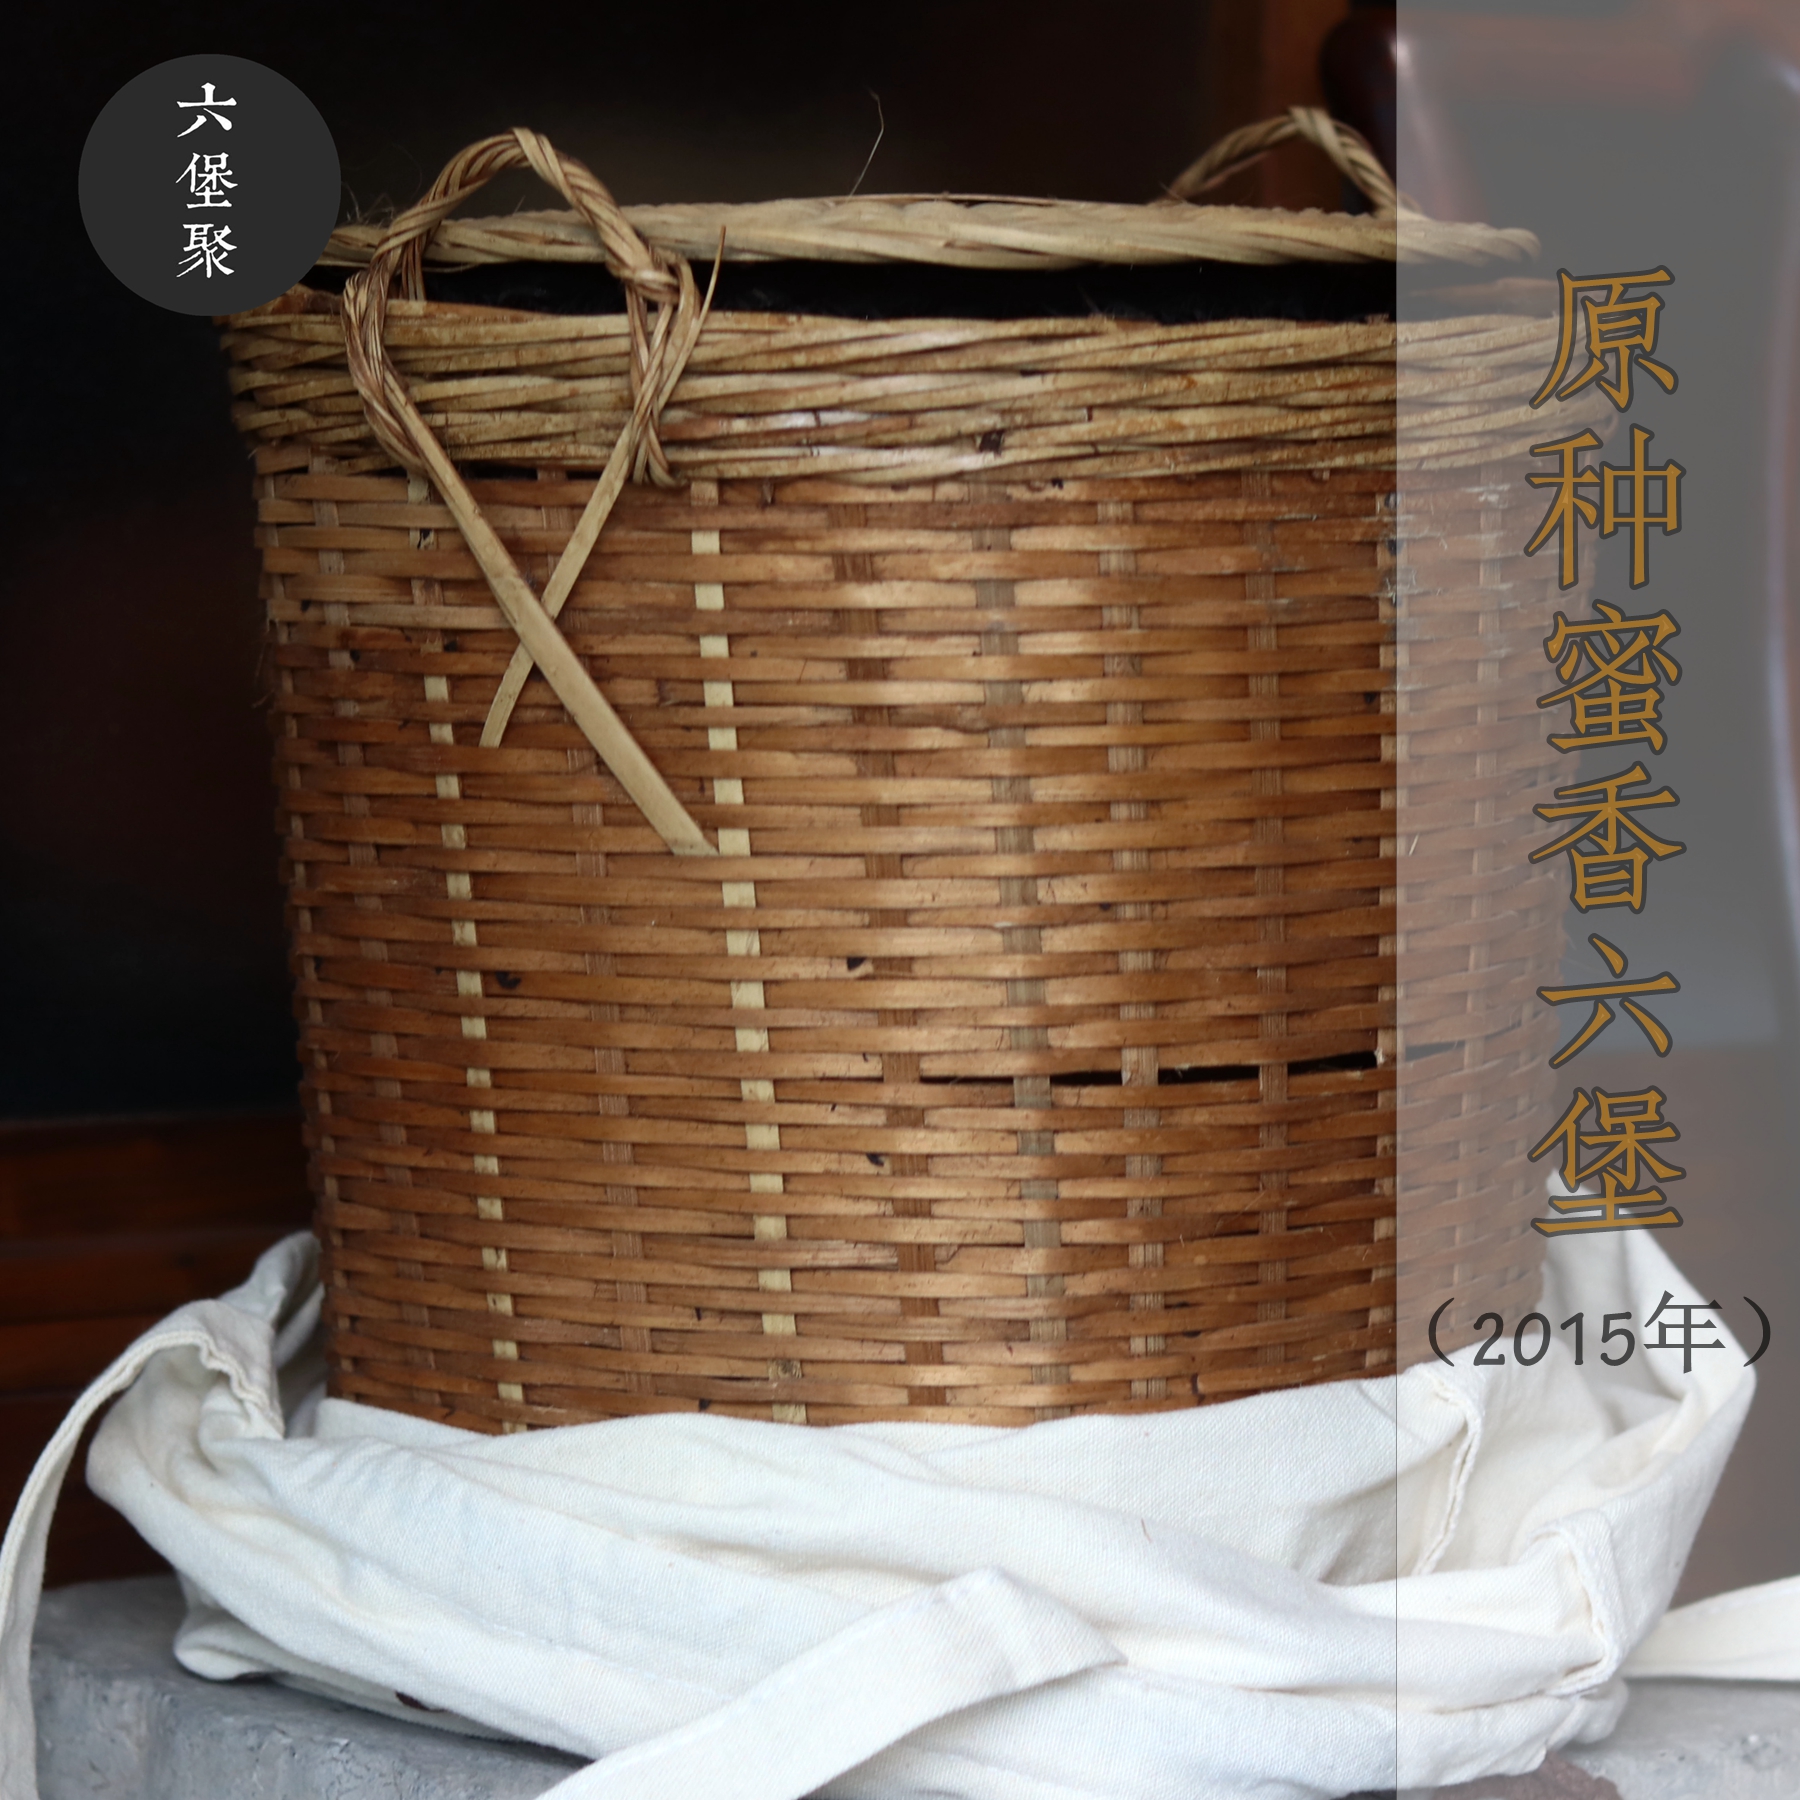 2015年 原种蜜香六堡茶 农家茶 古法工艺 六堡聚私房茶